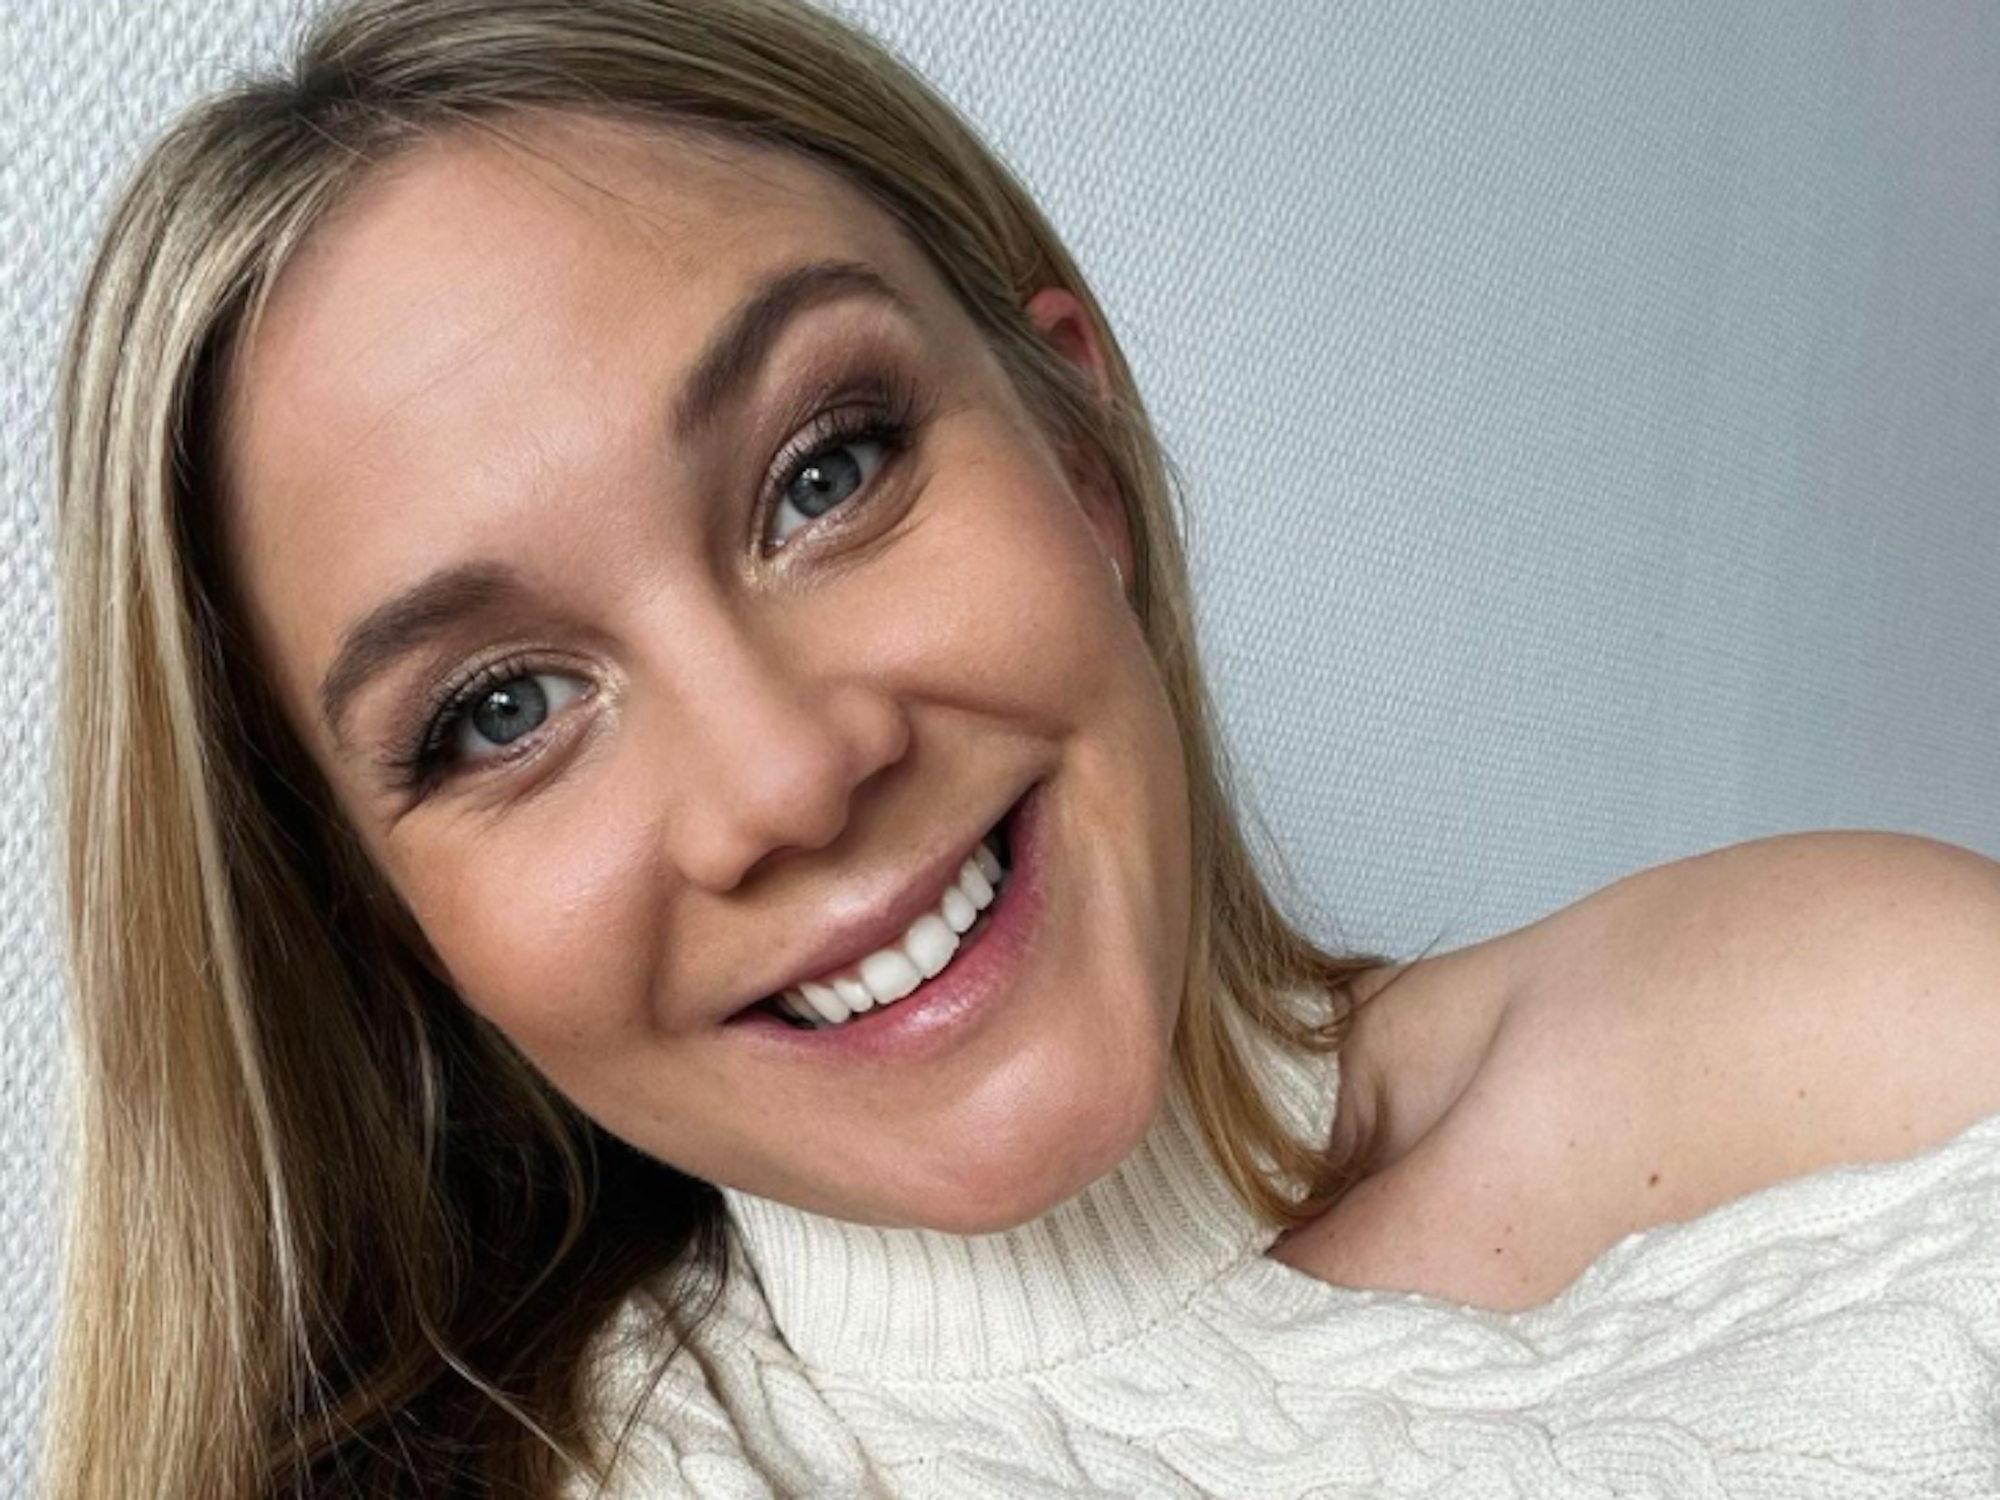 Moderatorin Alina Merkau vom Sat.1-„Frühstücksfernsehen“. Das Selfie hat sie am 25. April 2019 auf ihrem Instagram-Account gepostet.